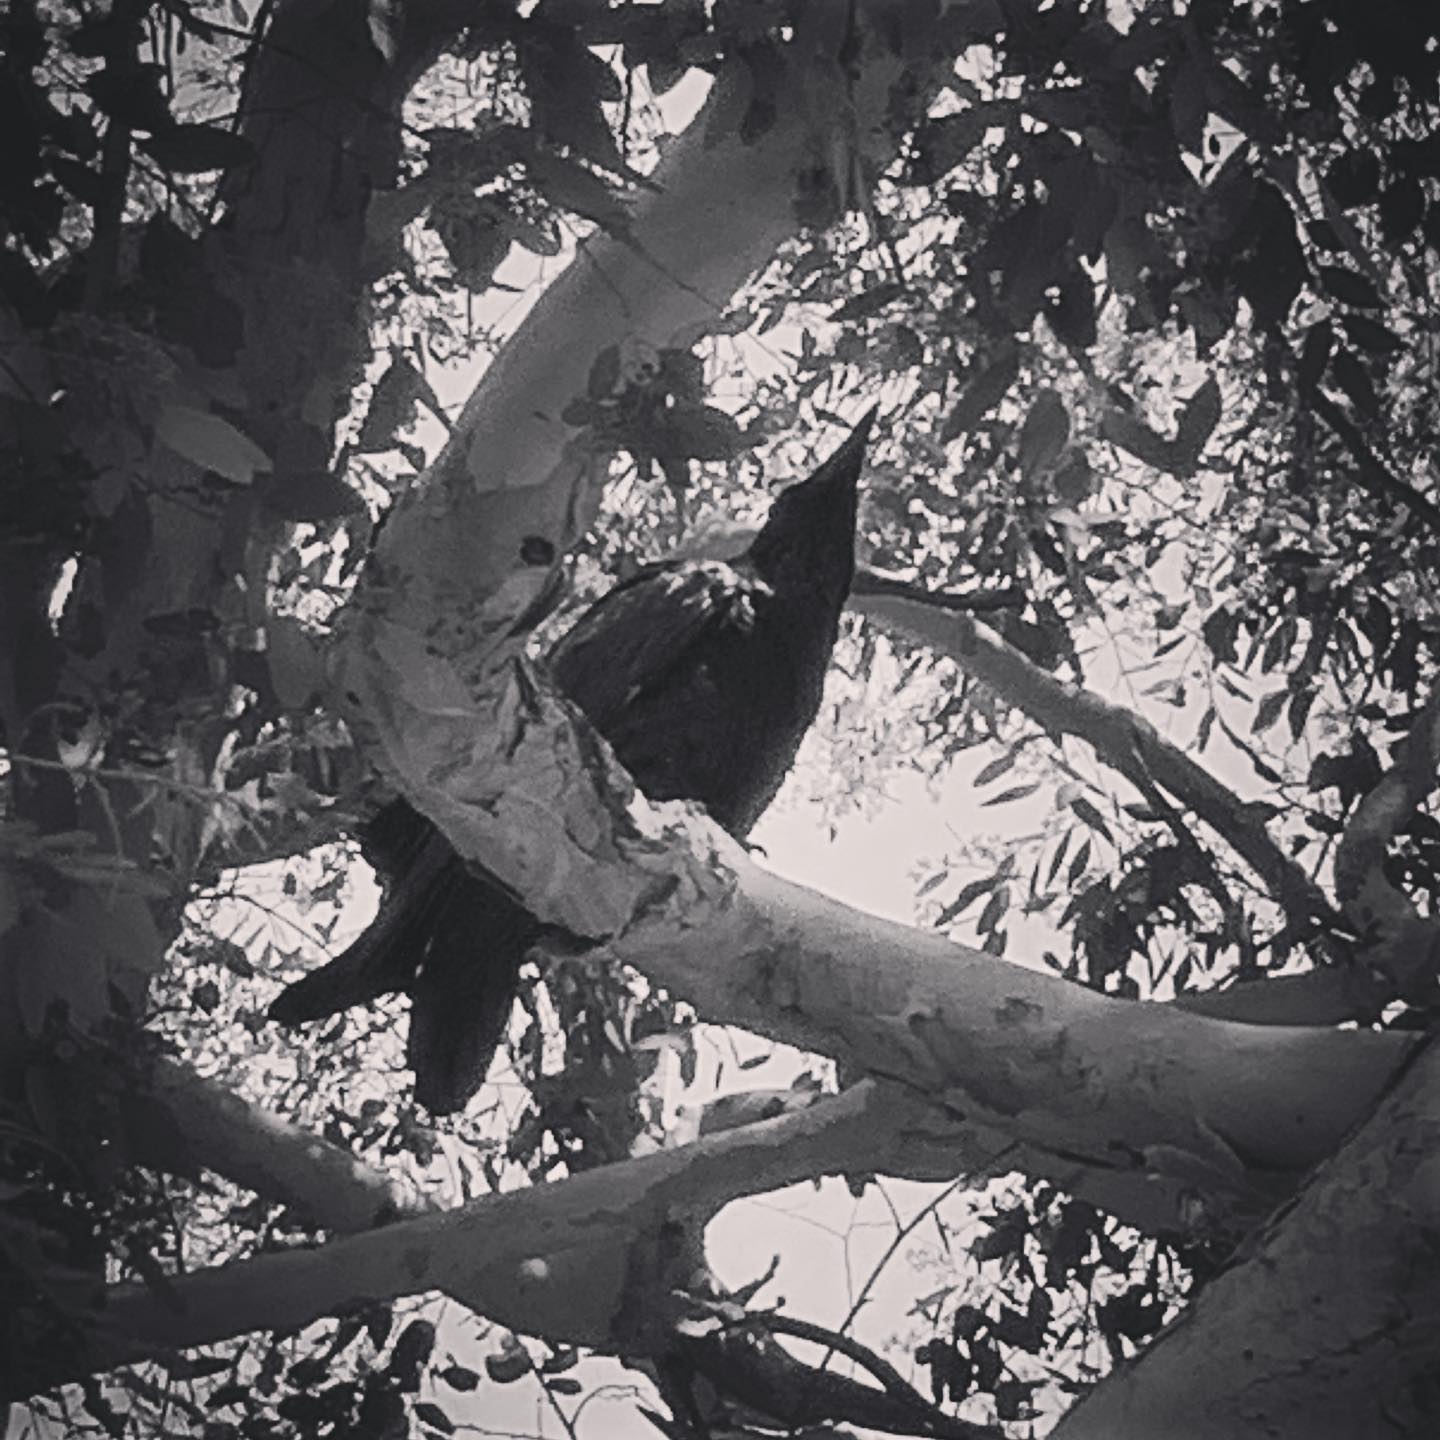 Spotted Leaf 2 via Instagram